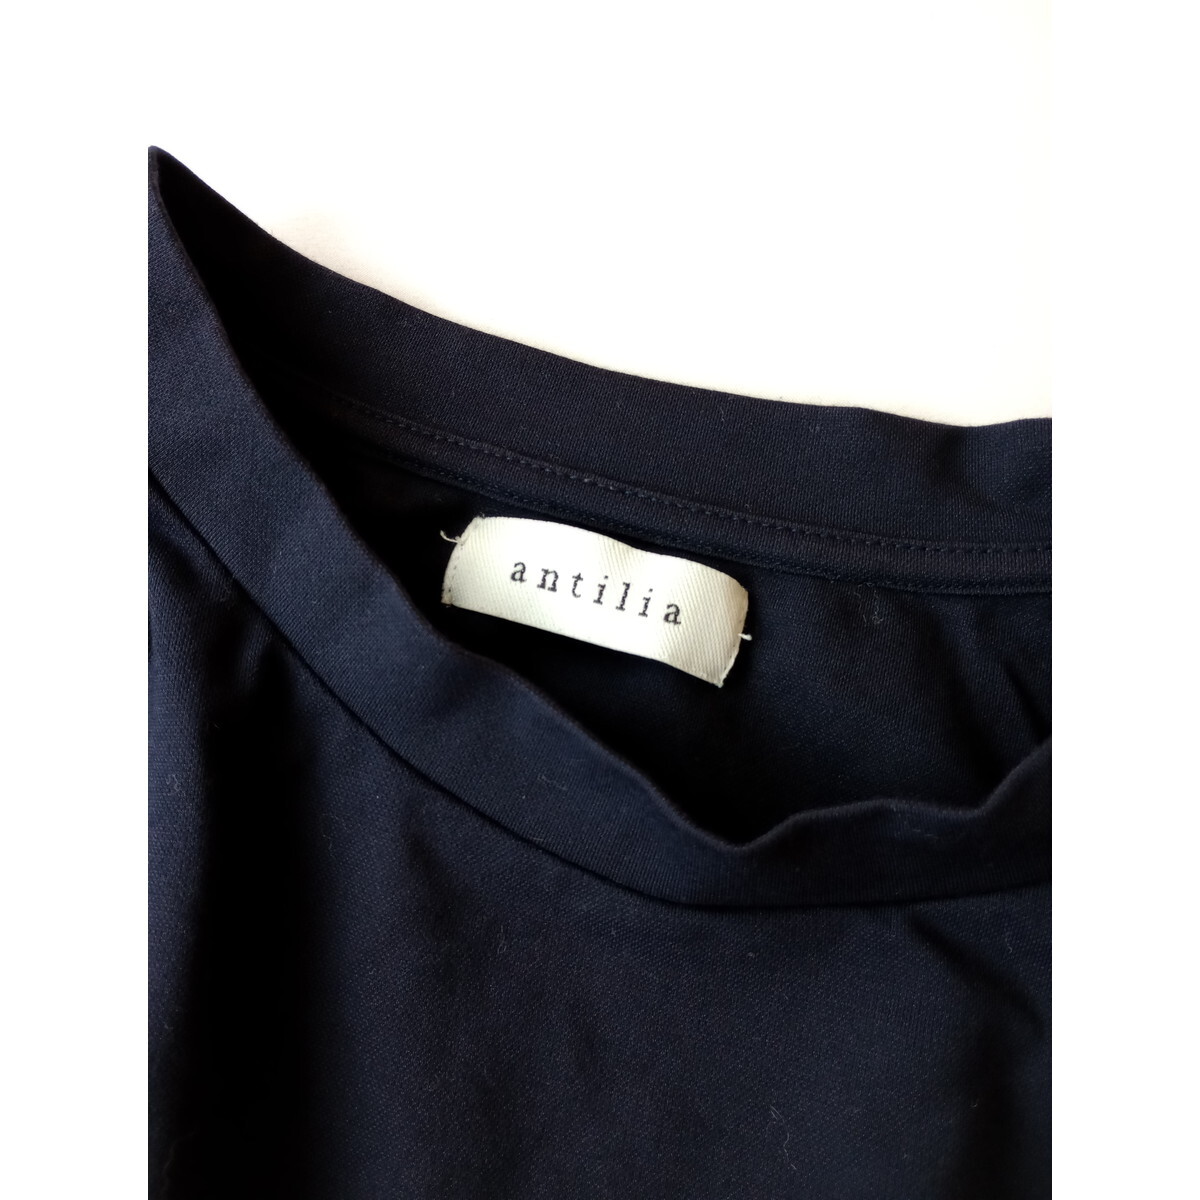 antilia アンティリア「ワードローブにわたしを新発見。」半袖 裾ゴム ブラウス プルオーバー ネイビー (54K+8393)の画像4